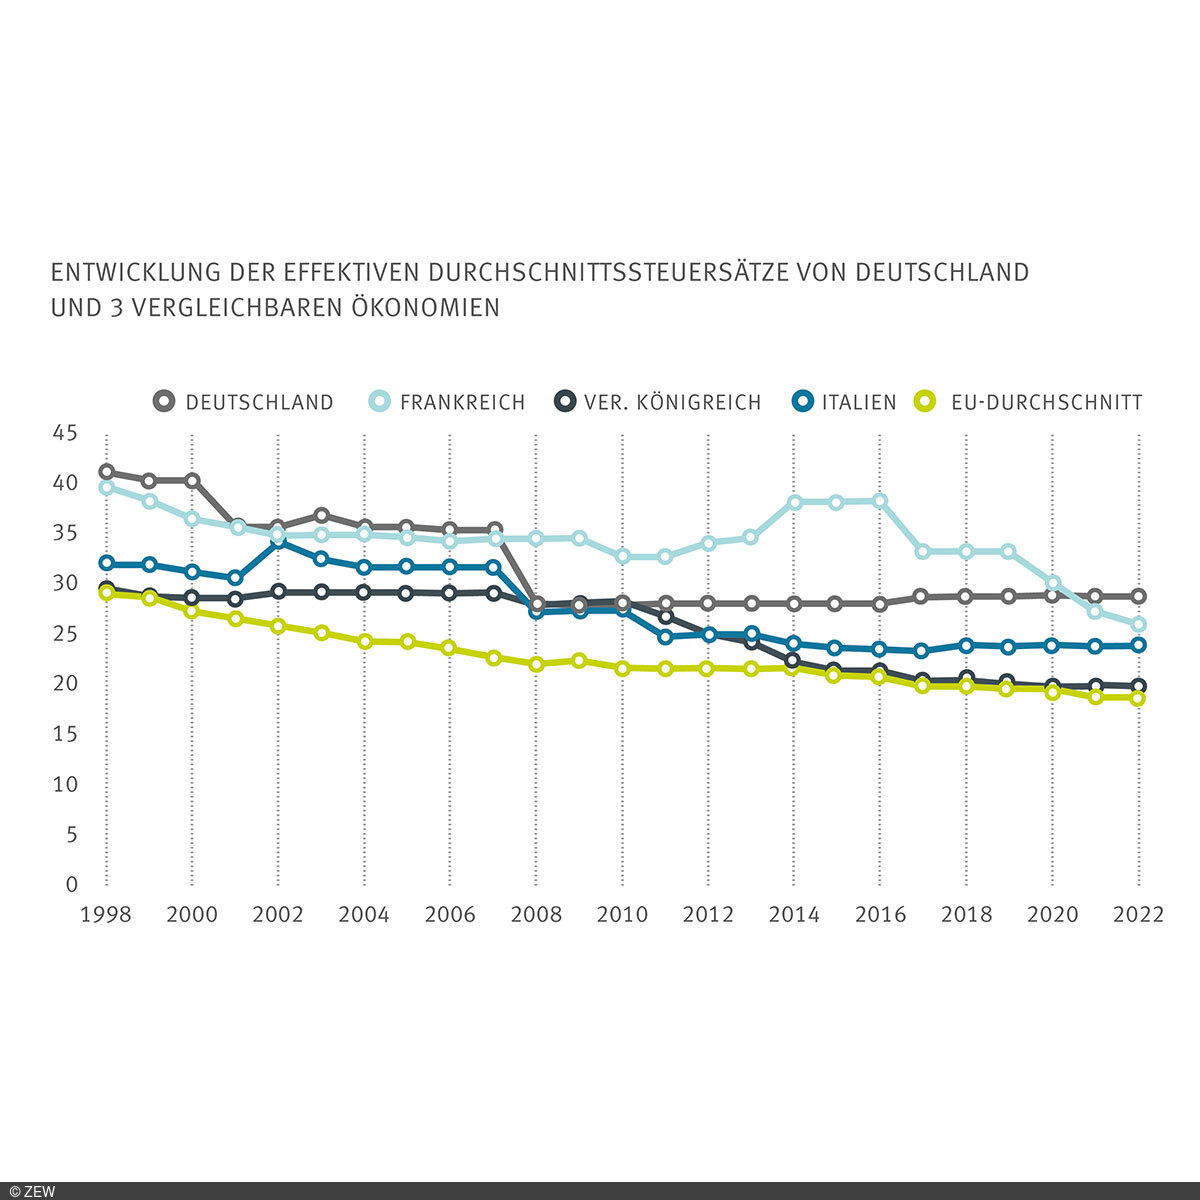 Grafik von der Entwicklung der effektiven Durchschnittssteuersätze von Deutschland und drei vergleichbaren Ökonomien